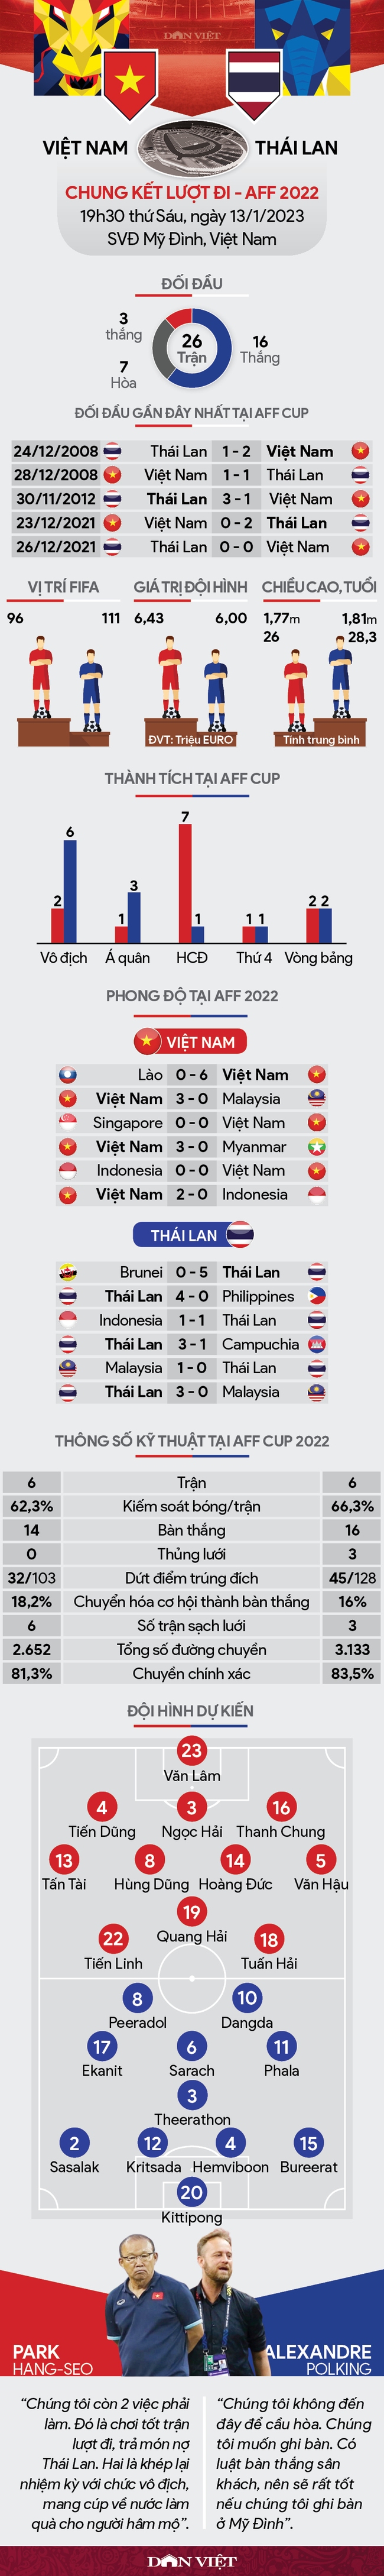 Tương quan lực lượng Việt Nam vs Thái Lan (19h30 ngày 13/1): Quyết giành lợi trước lượt về - Ảnh 1.